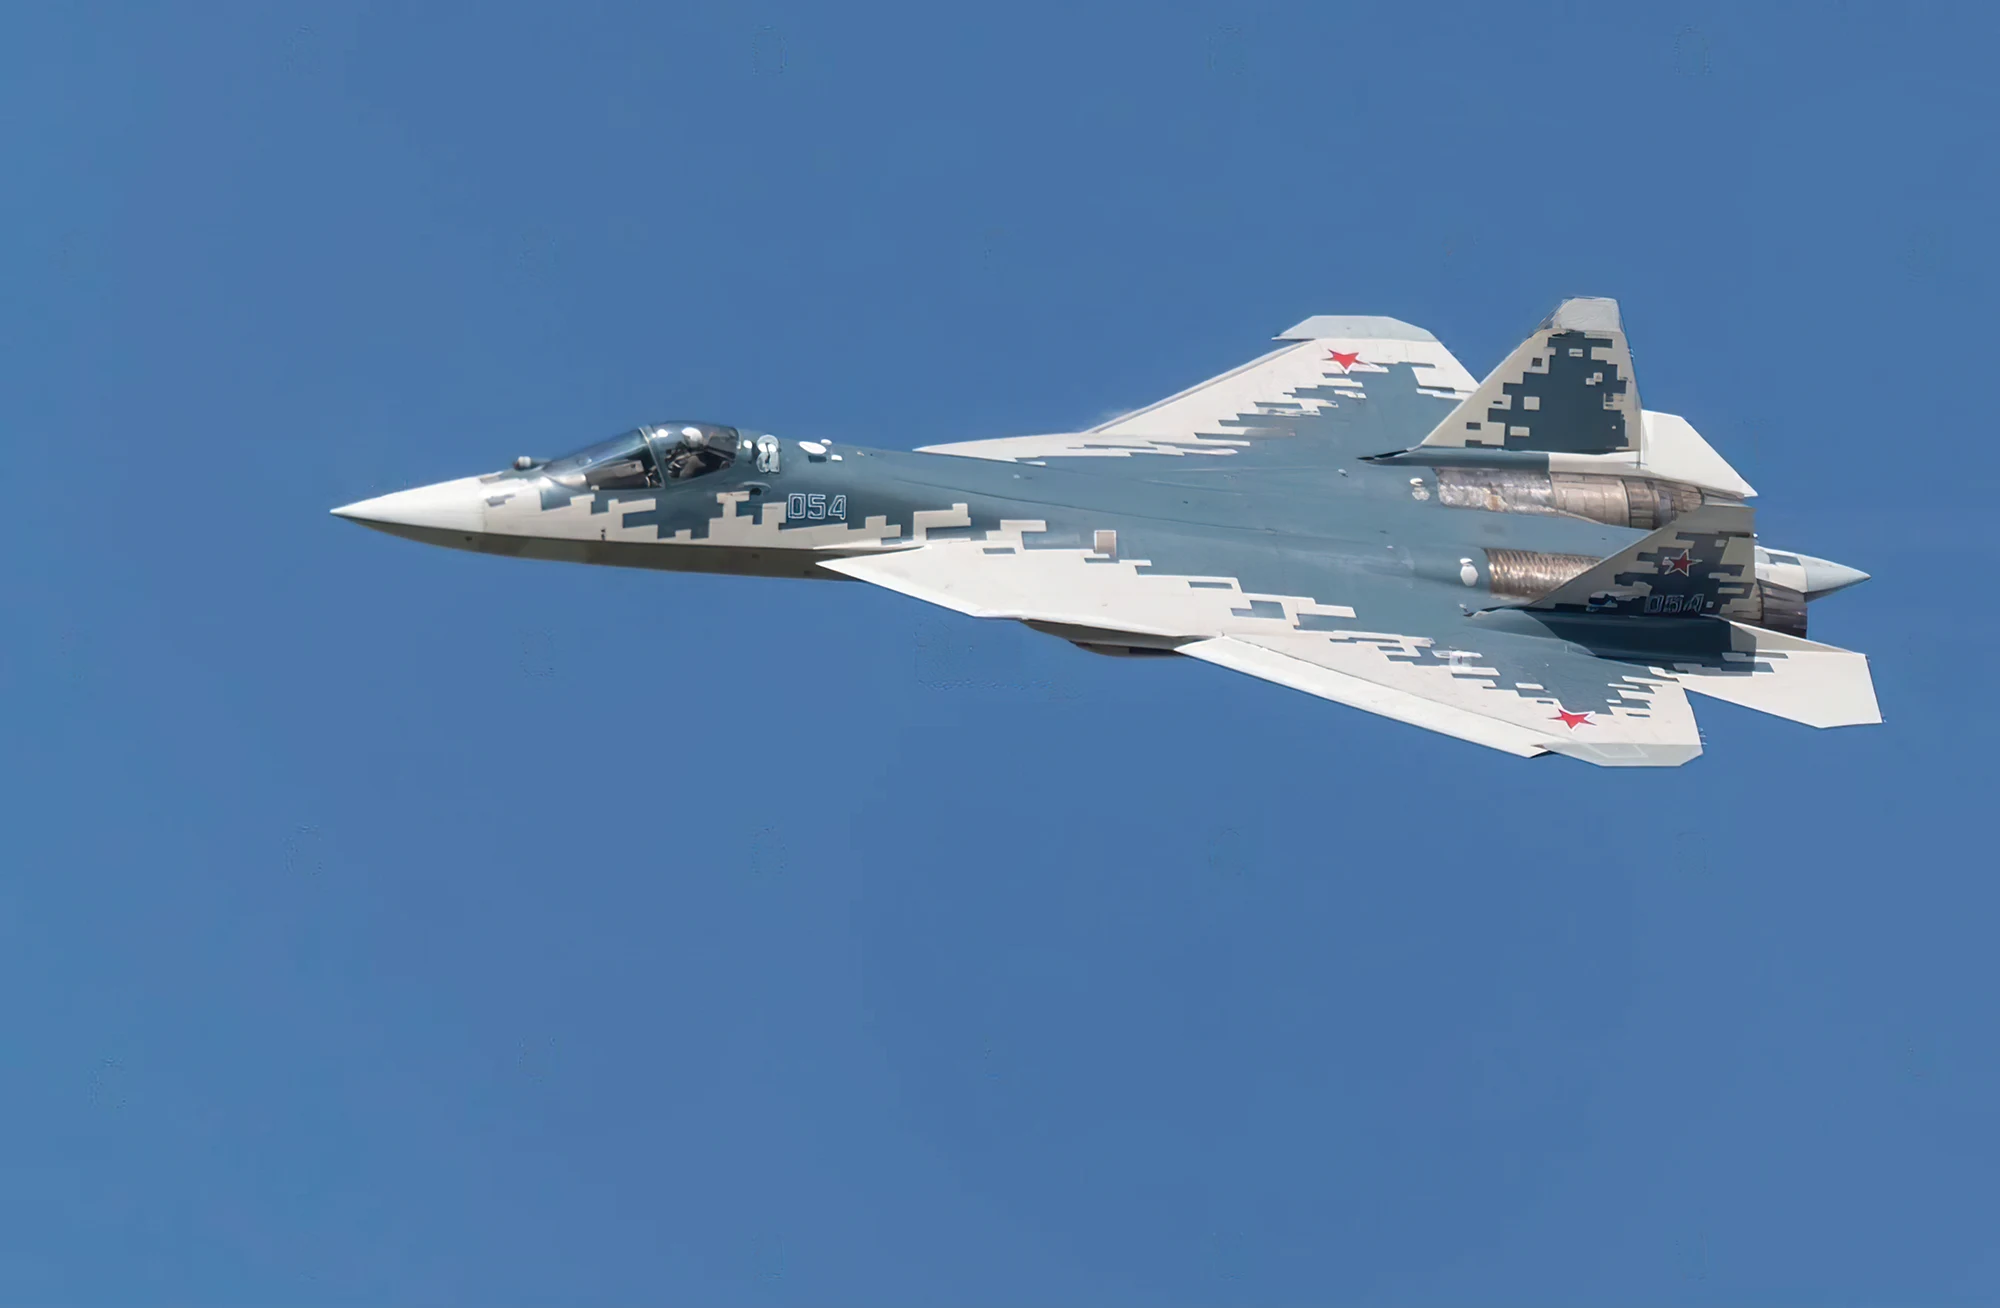 Rostec anuncia entrega de cazas Su-57 y Su-35S a Rusia